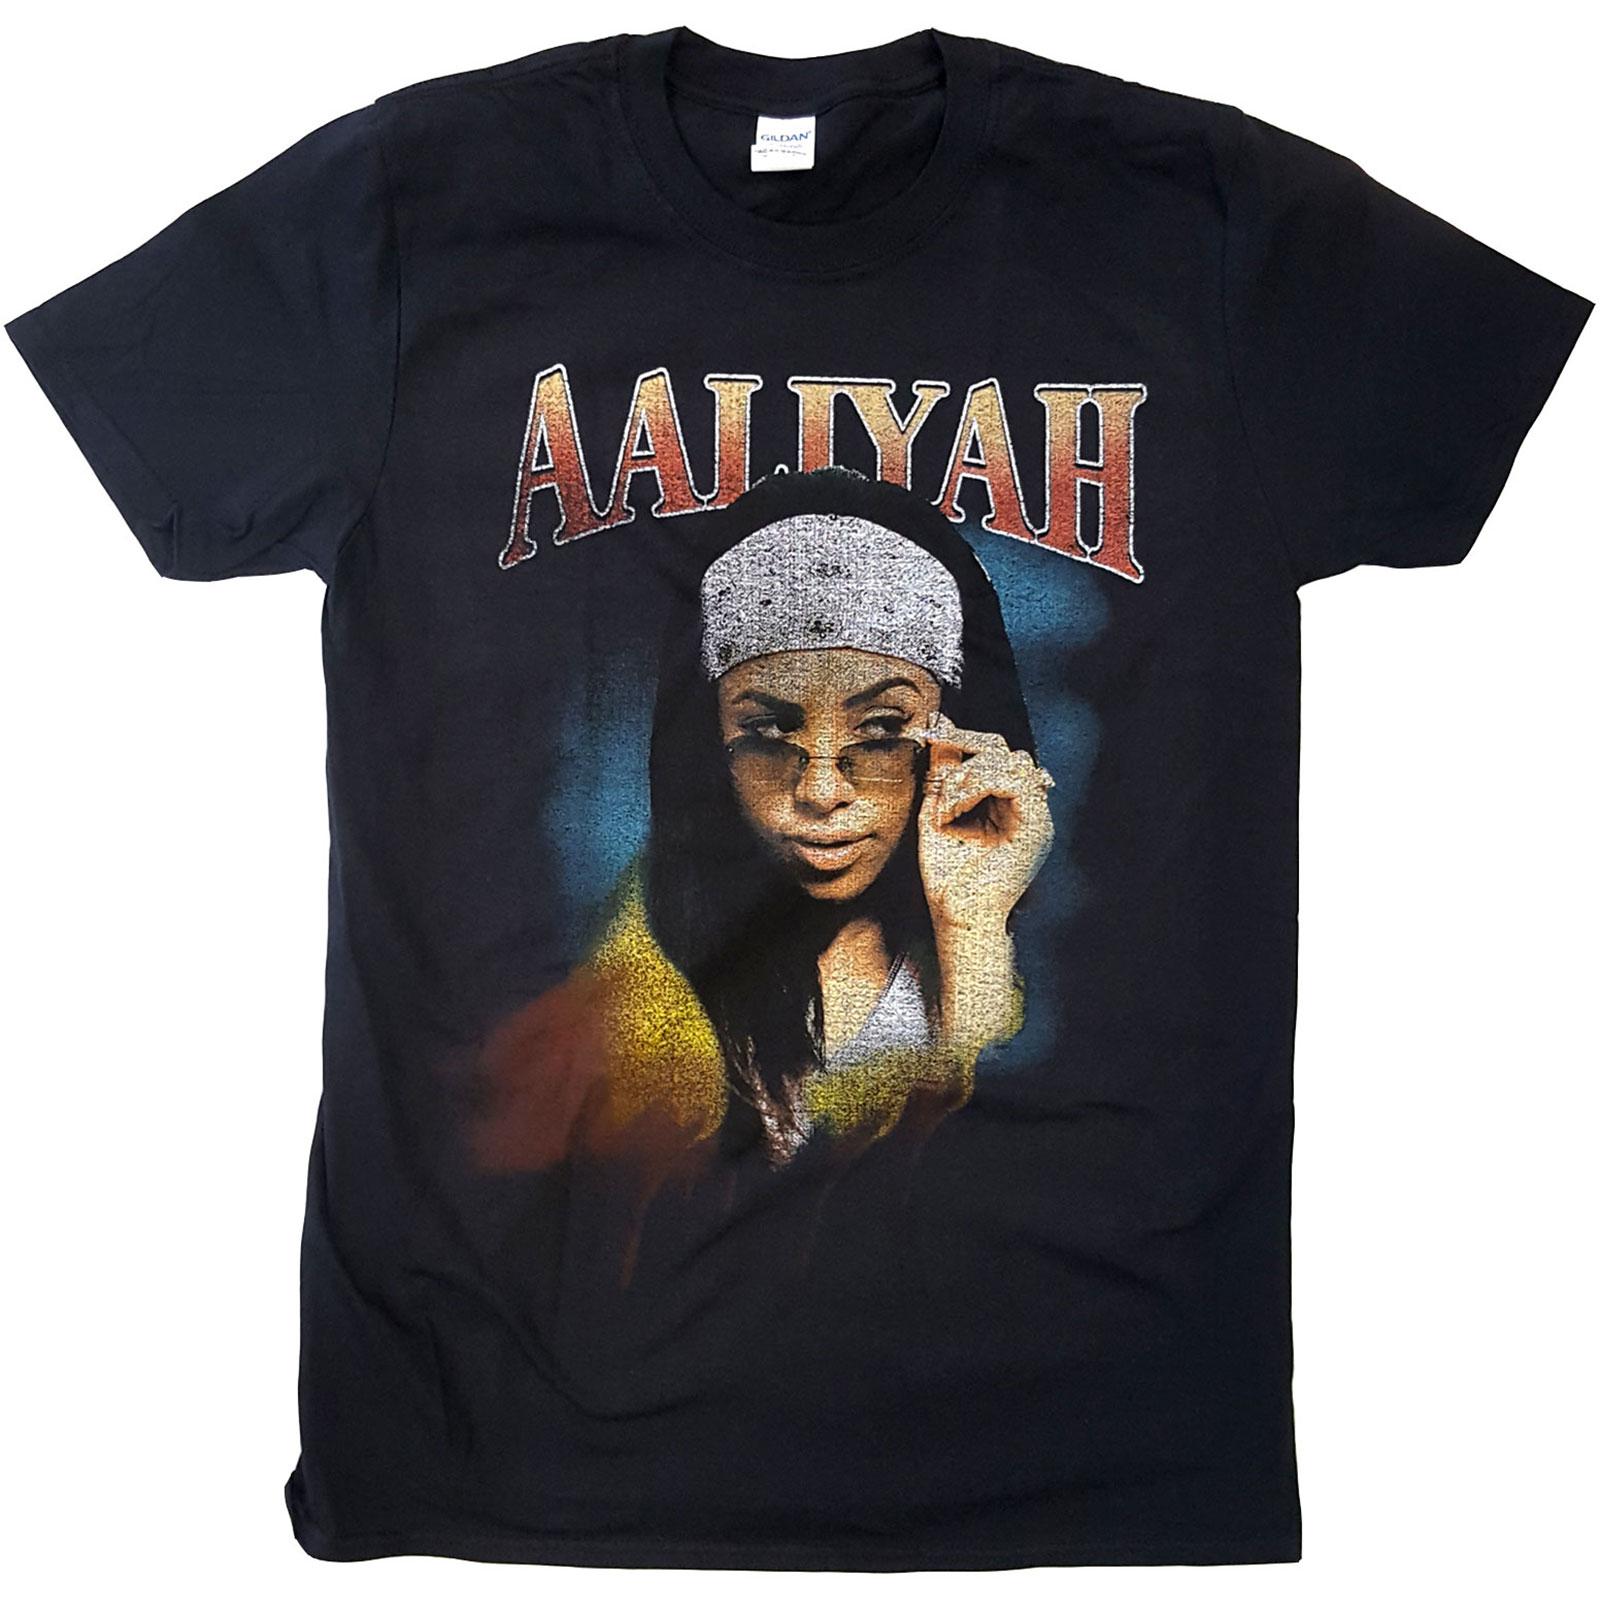 (アリーヤ) Aaliyah オフィシャル商品 ユニセックス Trippy Tシャツ 半袖 トップス 【海外通販】